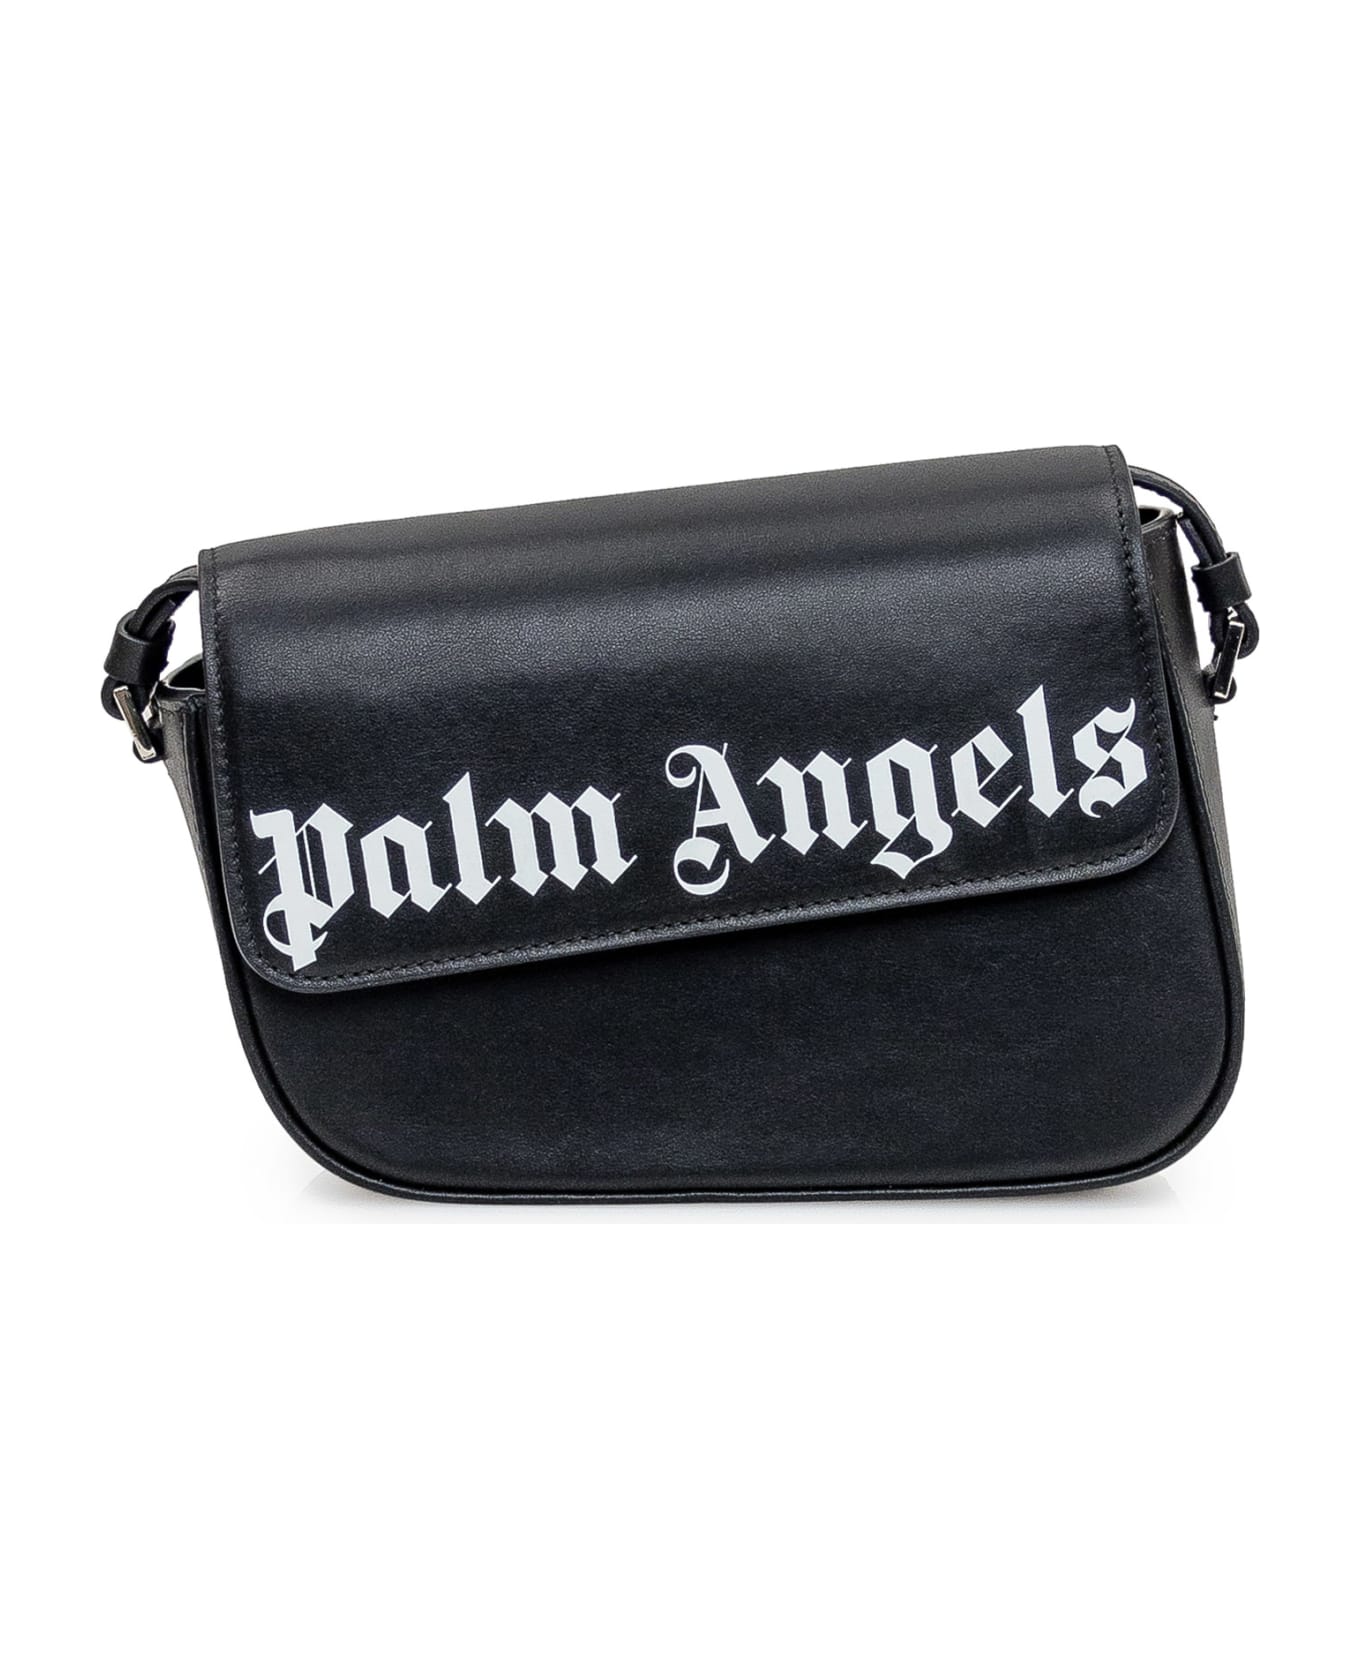 Palm Angels Crash Black Leather Bag - Black